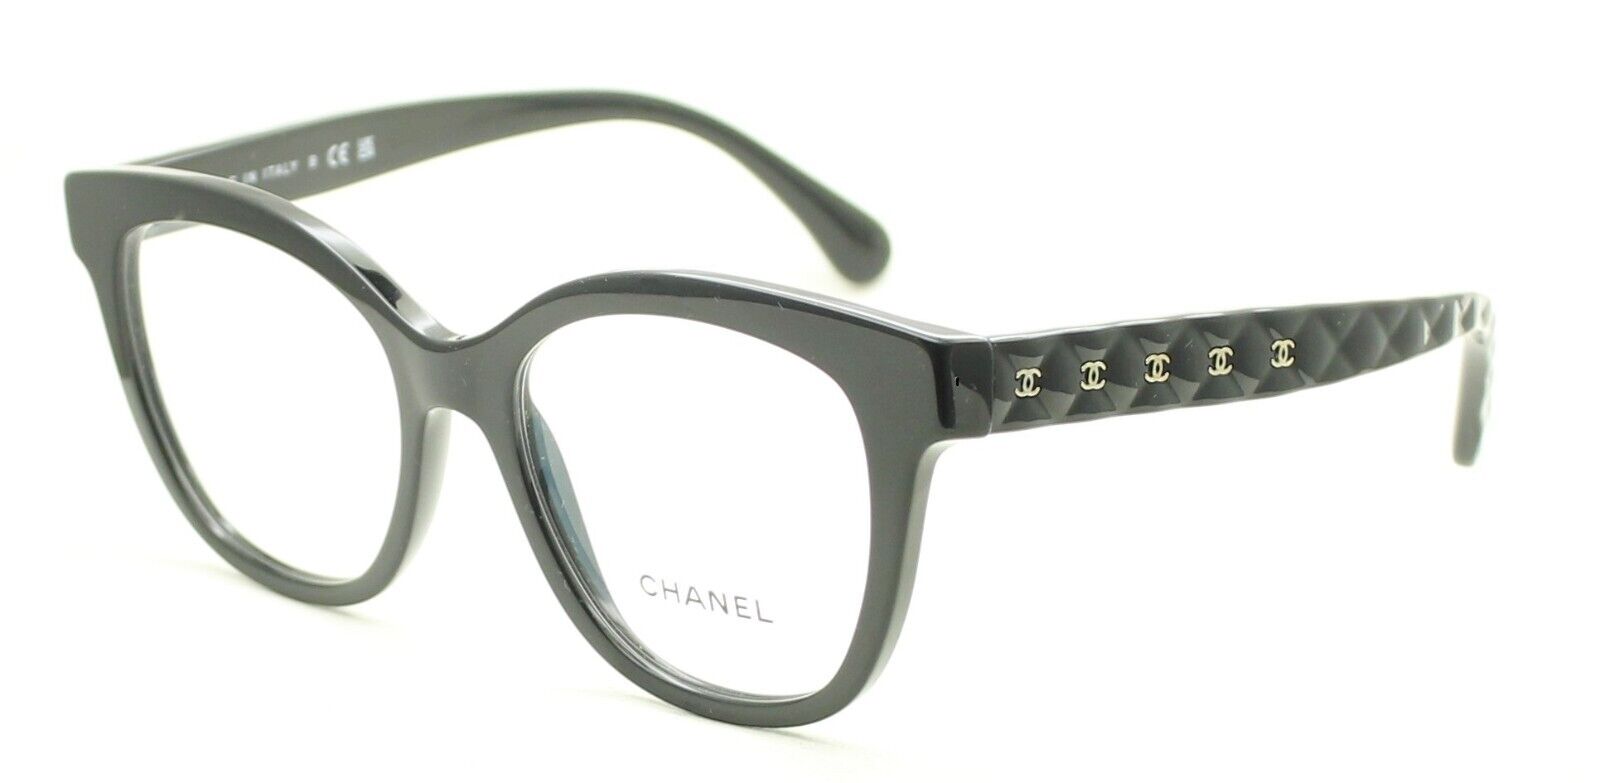 chanel reading glasses for women